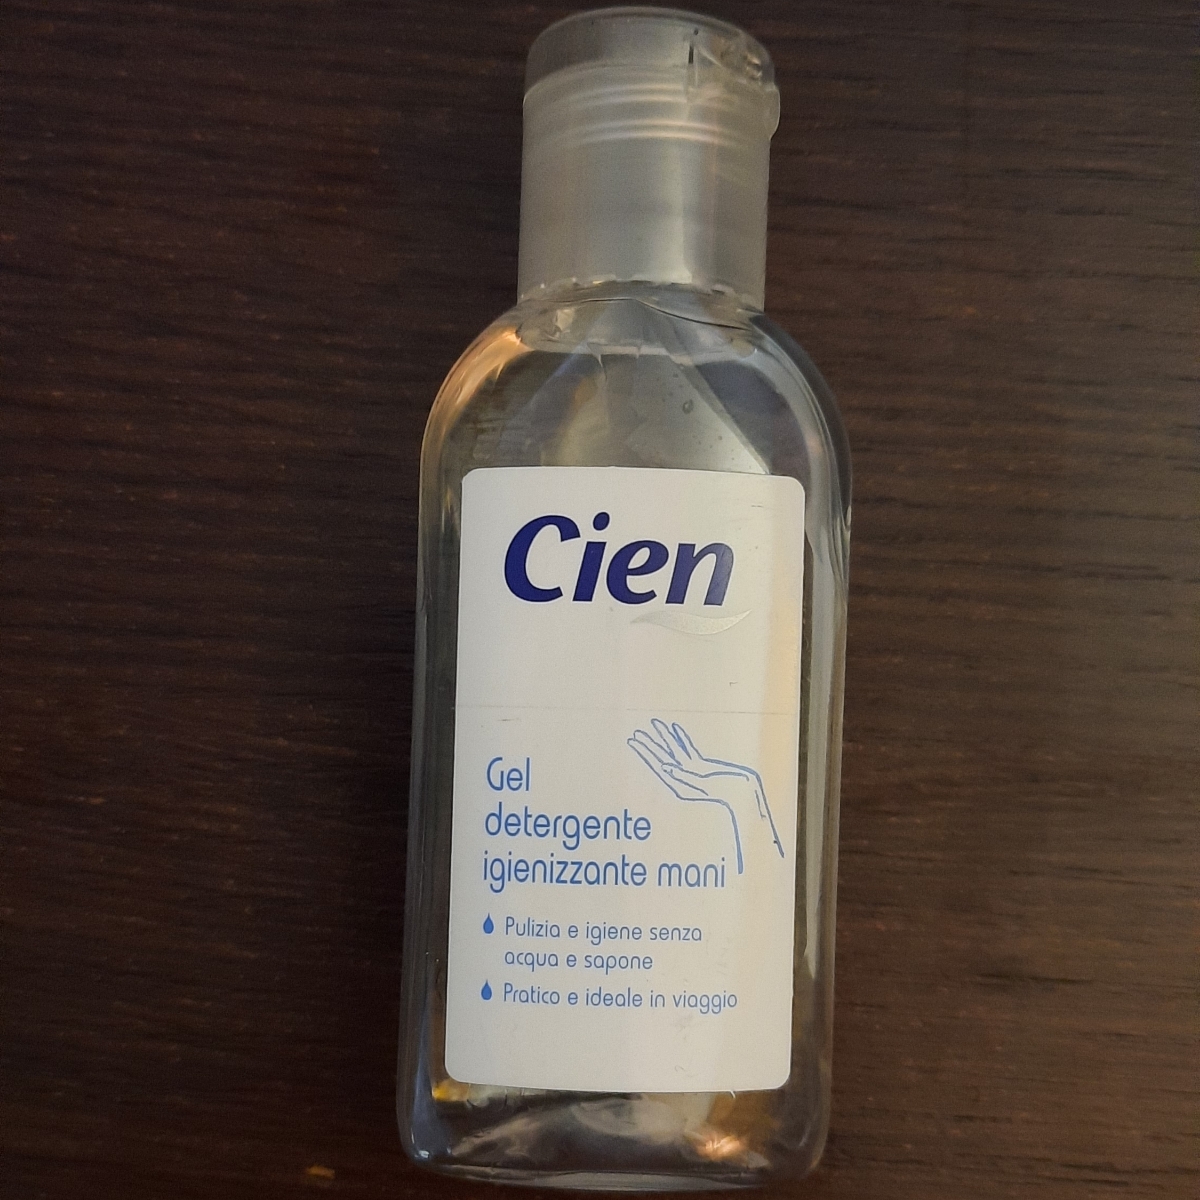 Cien Gel Detergente Mani Reviews | abillion